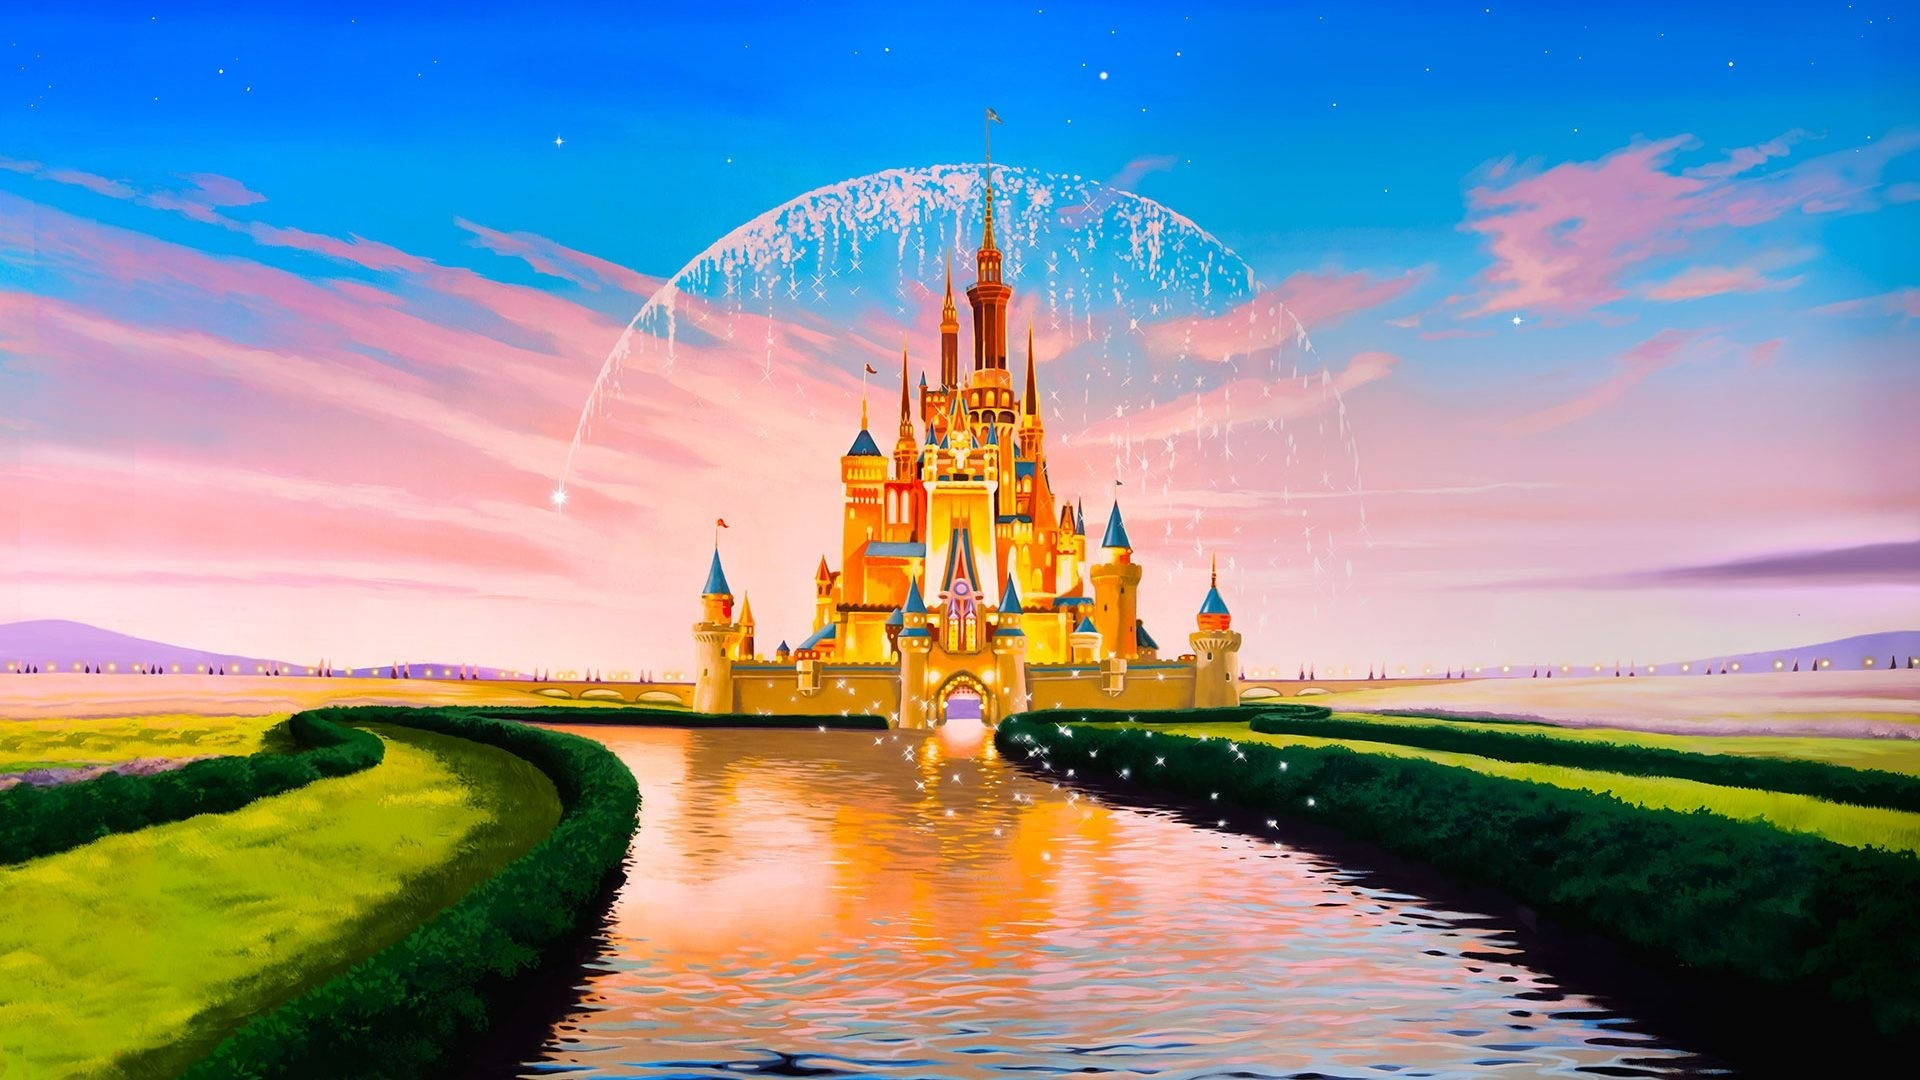 Walt Disney 4k Ultra Wide Castle Art Background